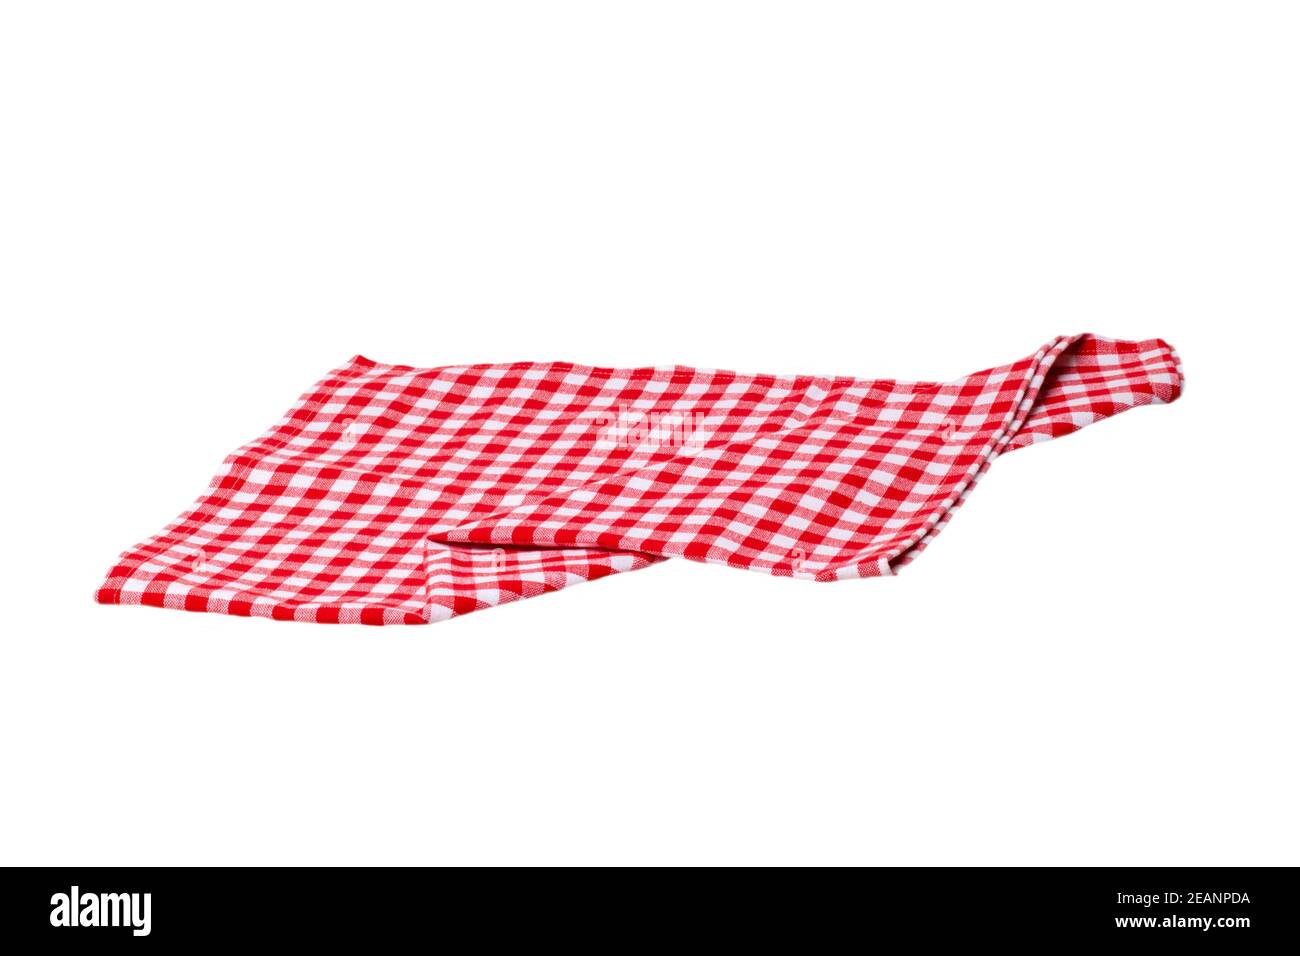 Handtücher isoliert. Nahaufnahme von rot-weiß karierten Servietten oder Picknick Tischdecke Textur isoliert auf einem weißen Hintergrund. Küchentuch. Stockfoto